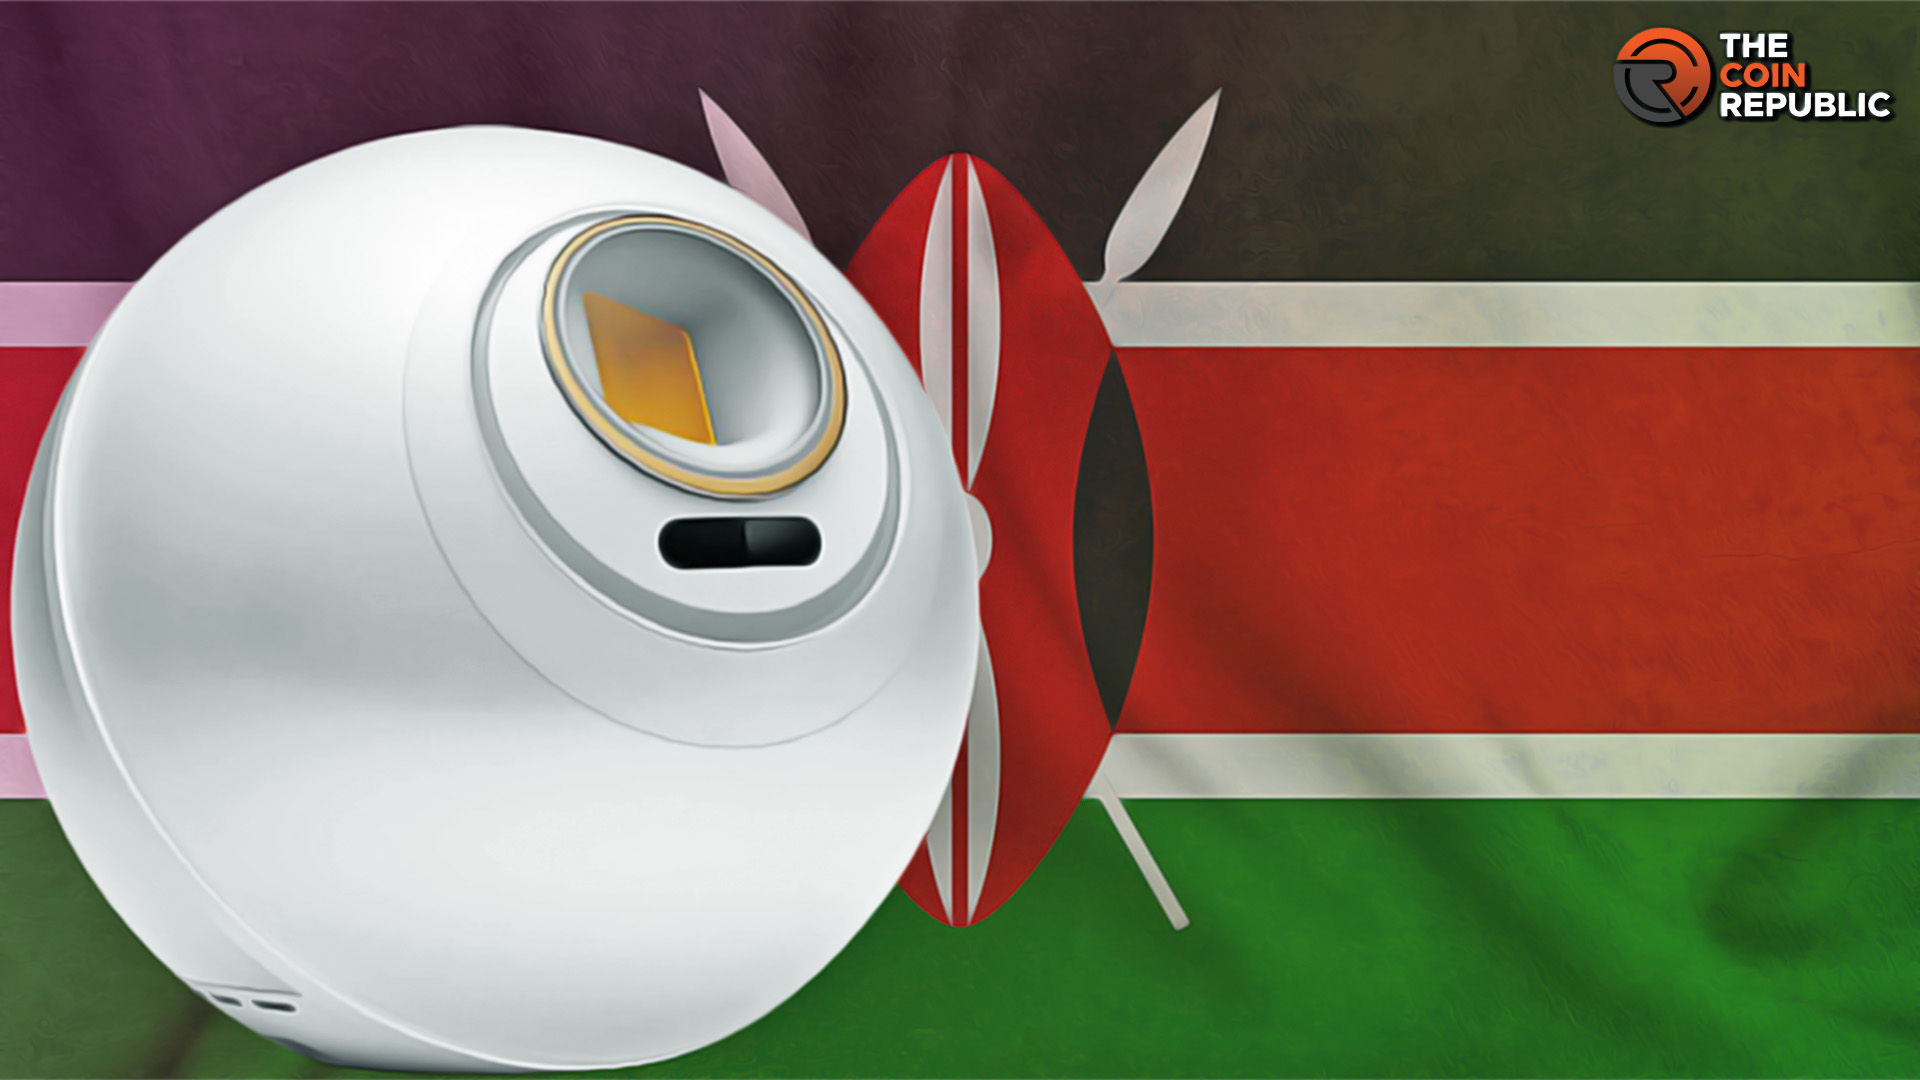 Eyeballs Scanner Worldcoin Under Fierce Eyes in Kenyan Lawmakers